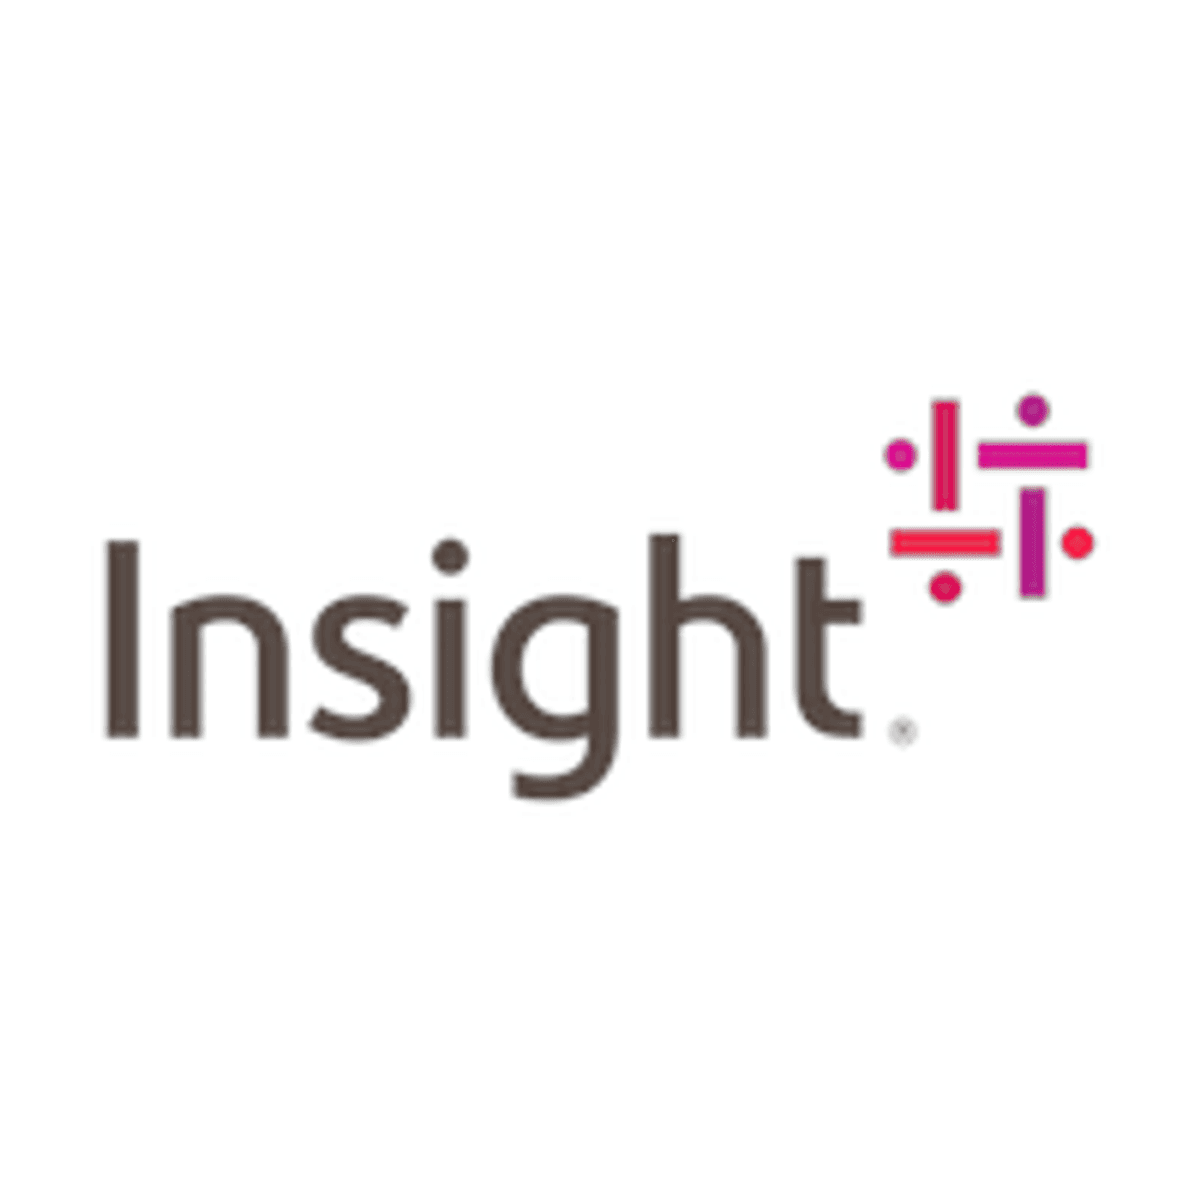 Insight Enterprises ziet omzet in tweede kwartaal 13 procent stijgen image